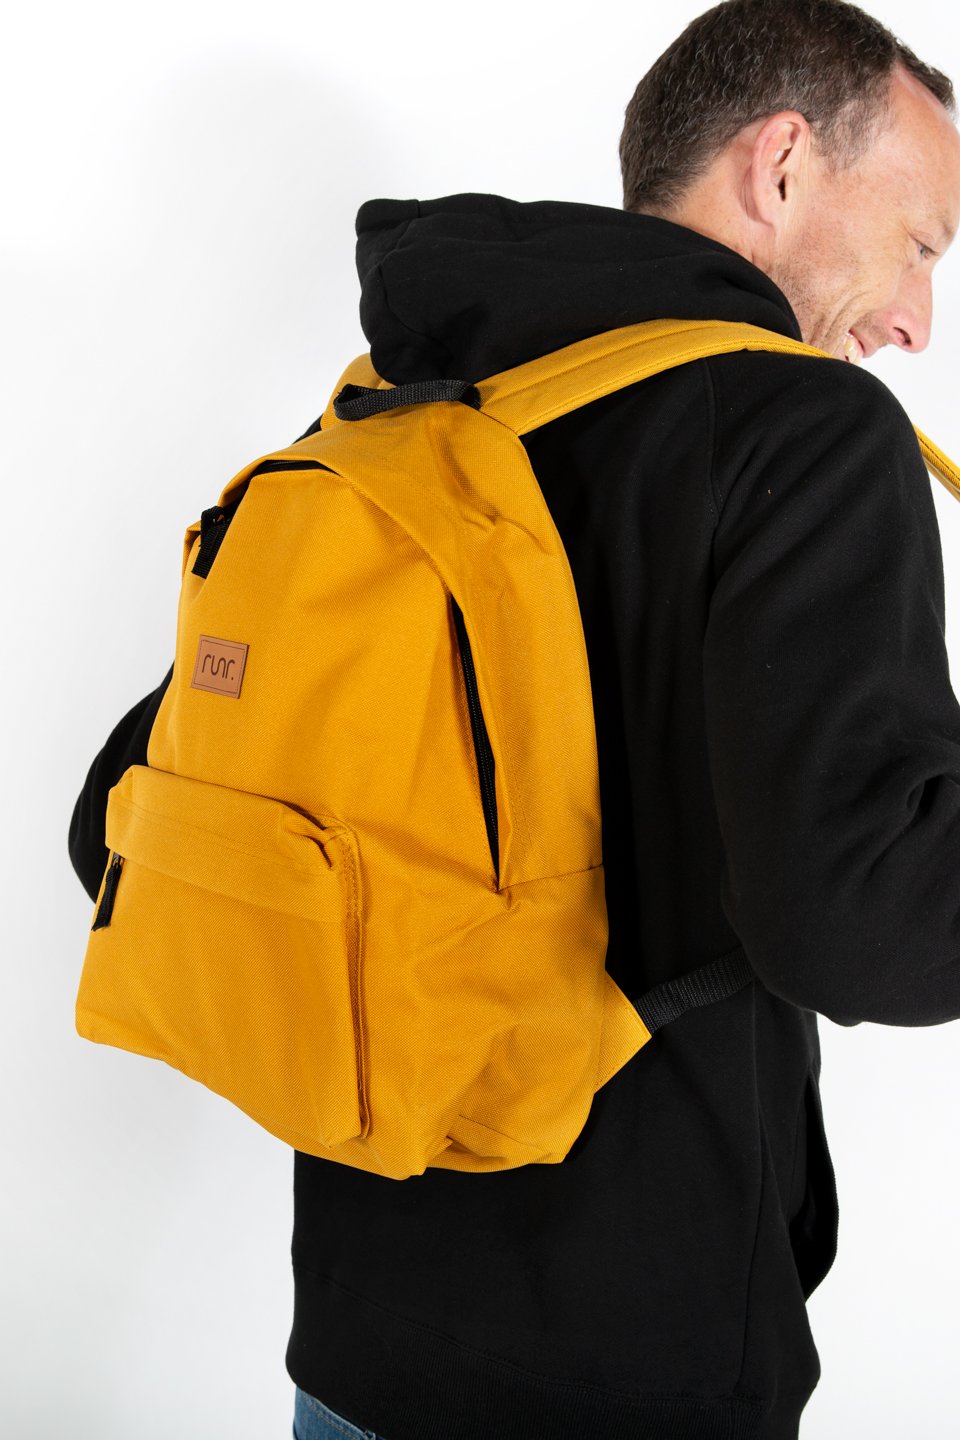 Runr Go Backpack - Mustard